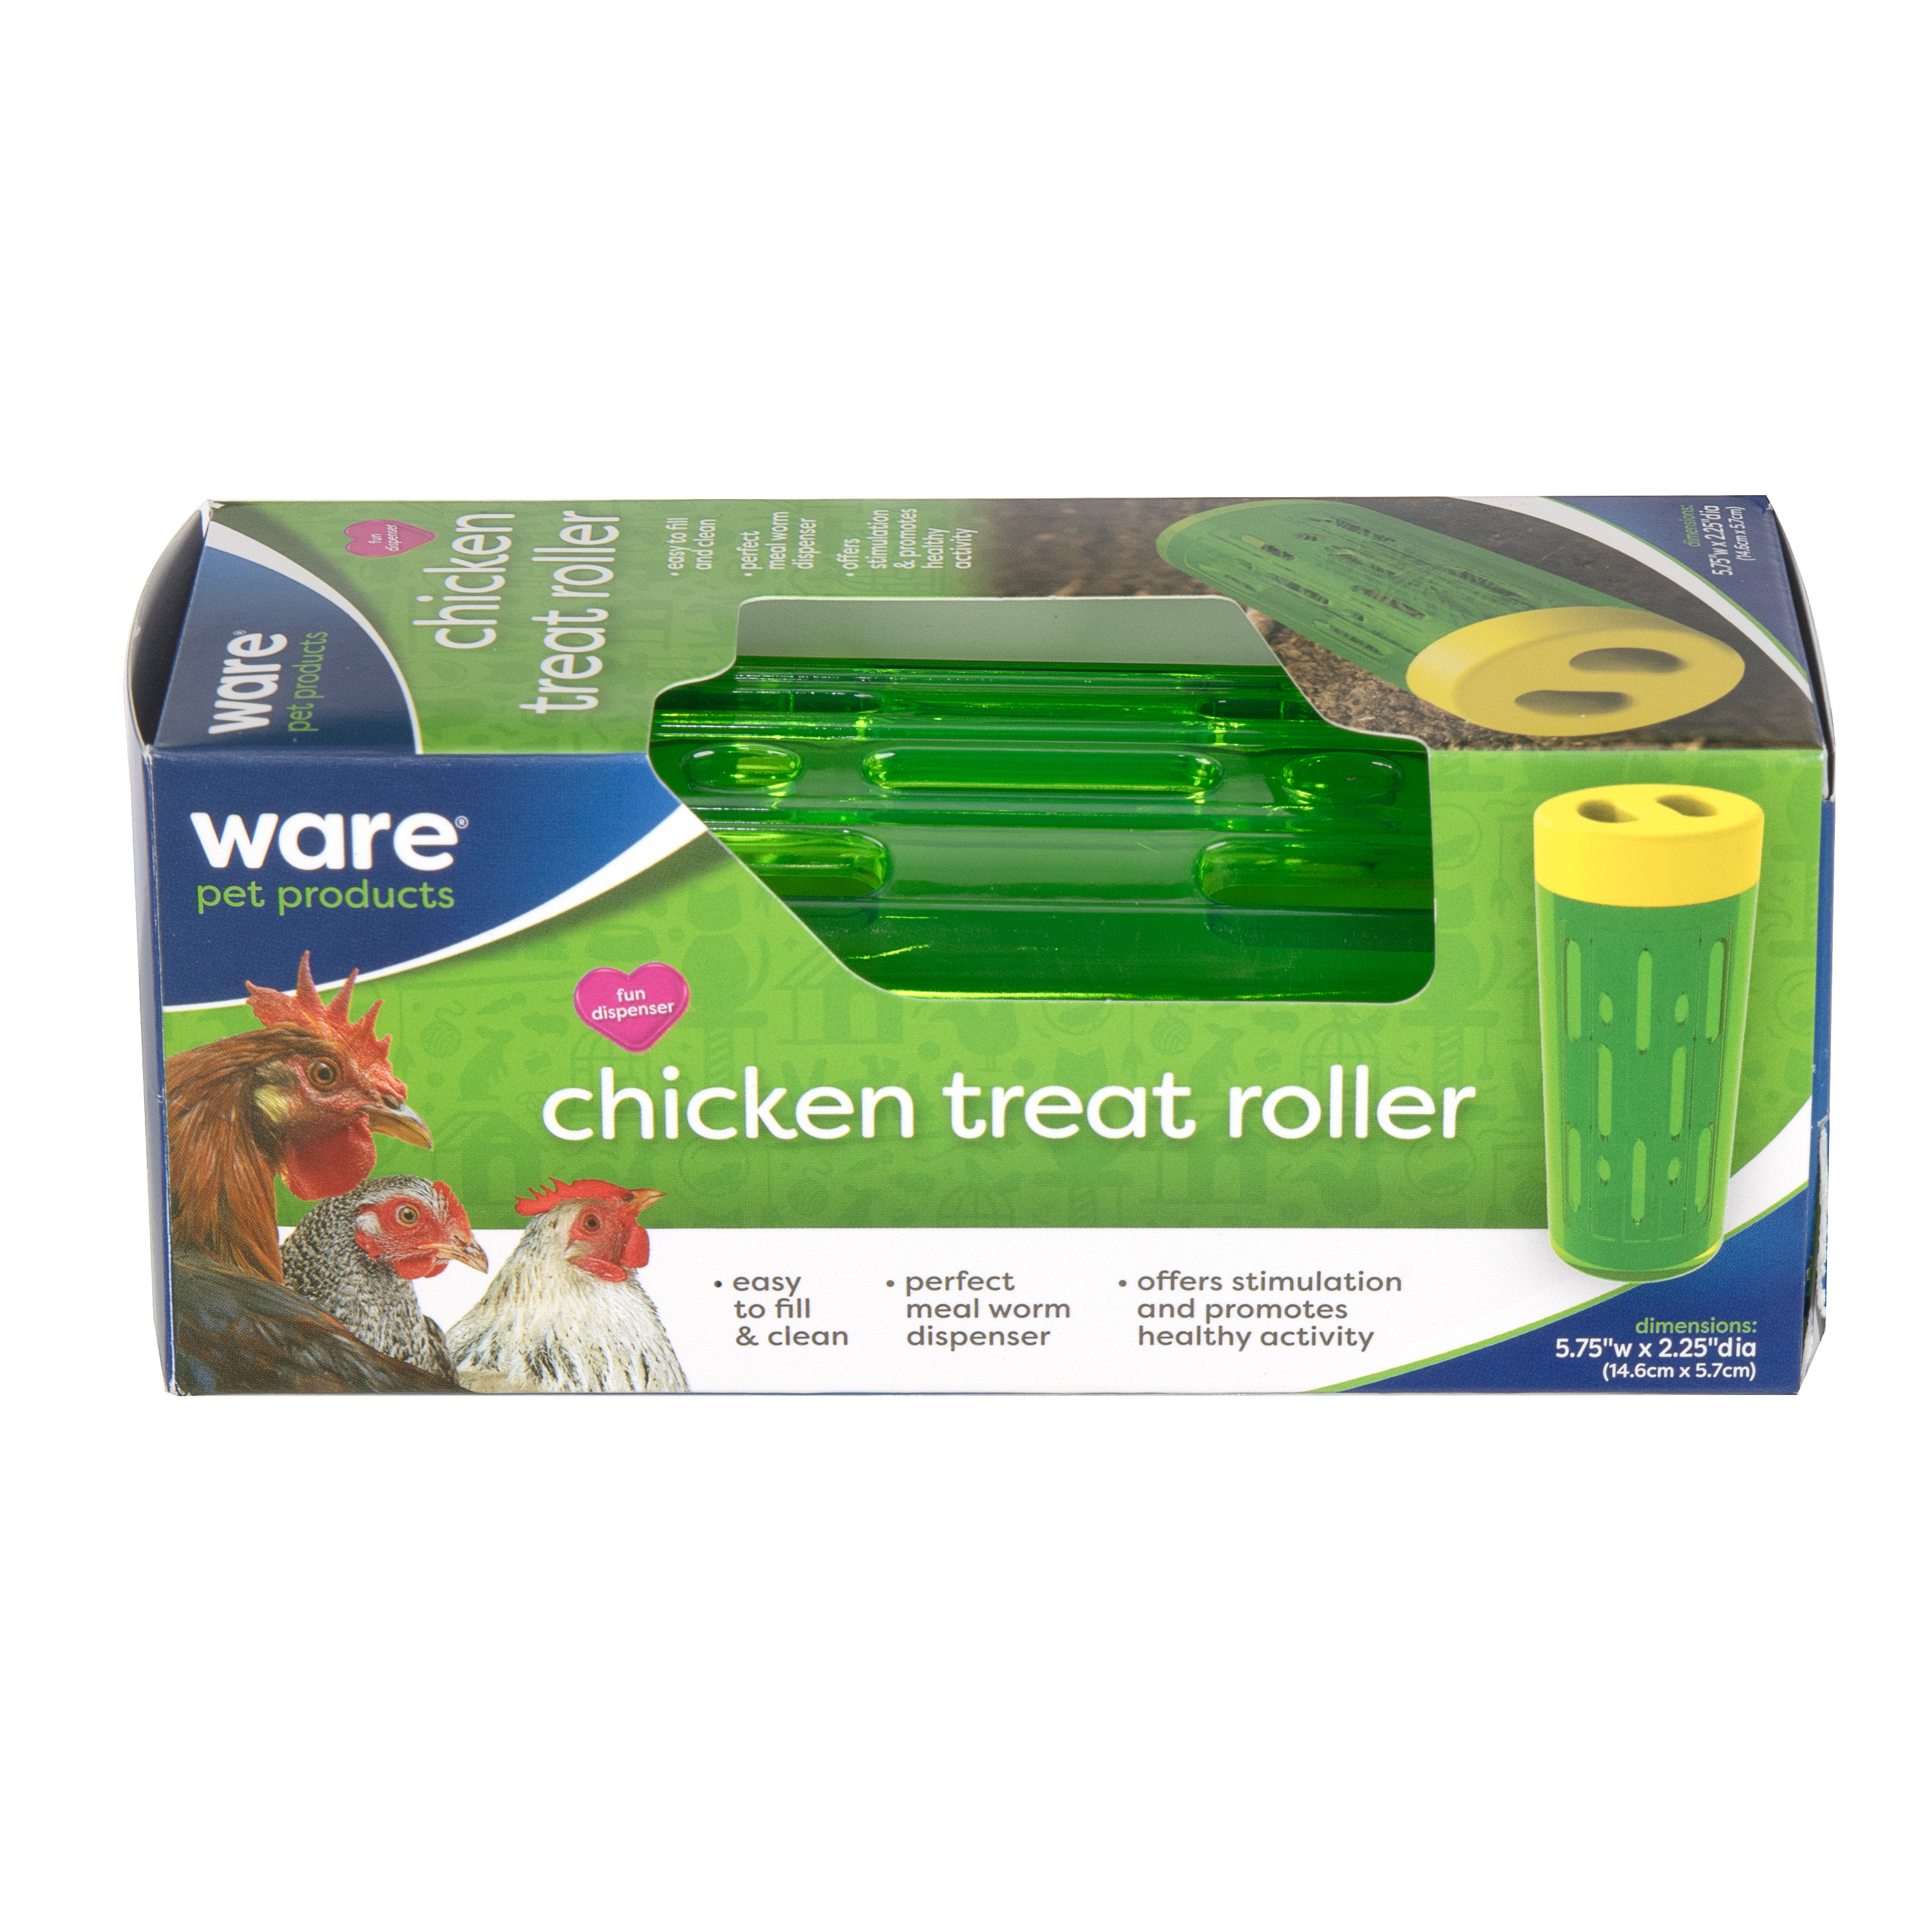 Chicken Treat Roller